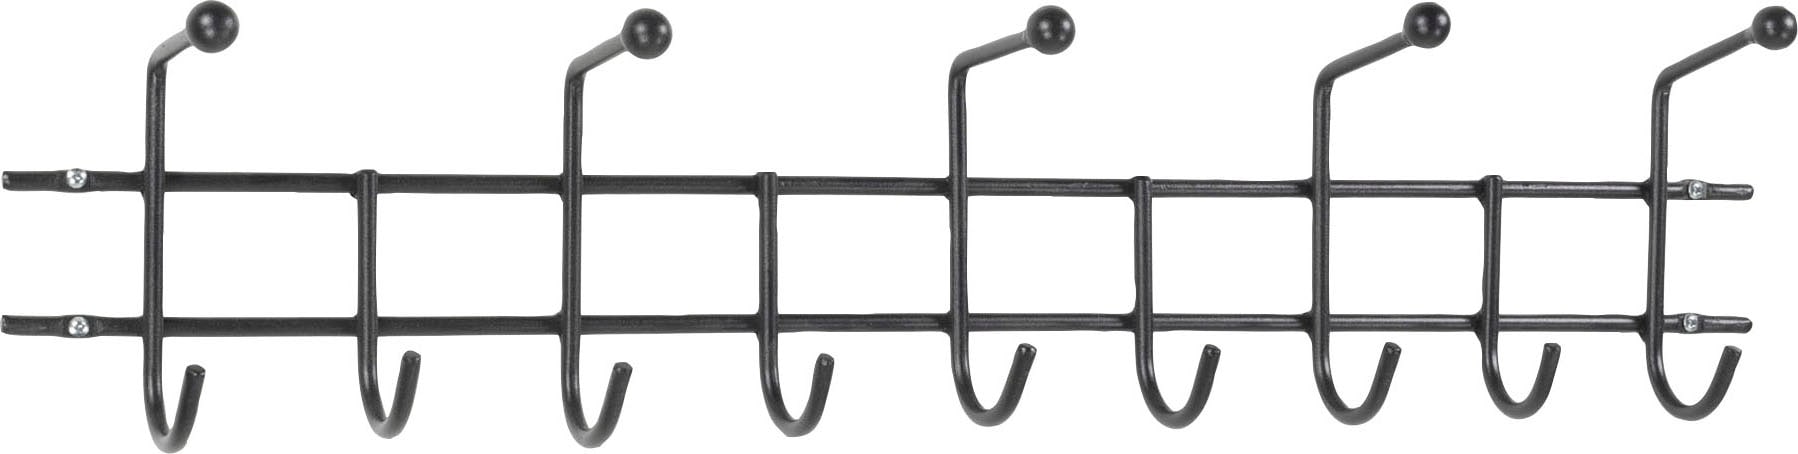 Spinder Design Garderobenhalter »Barato«, Metall, Breite 85,5 cm